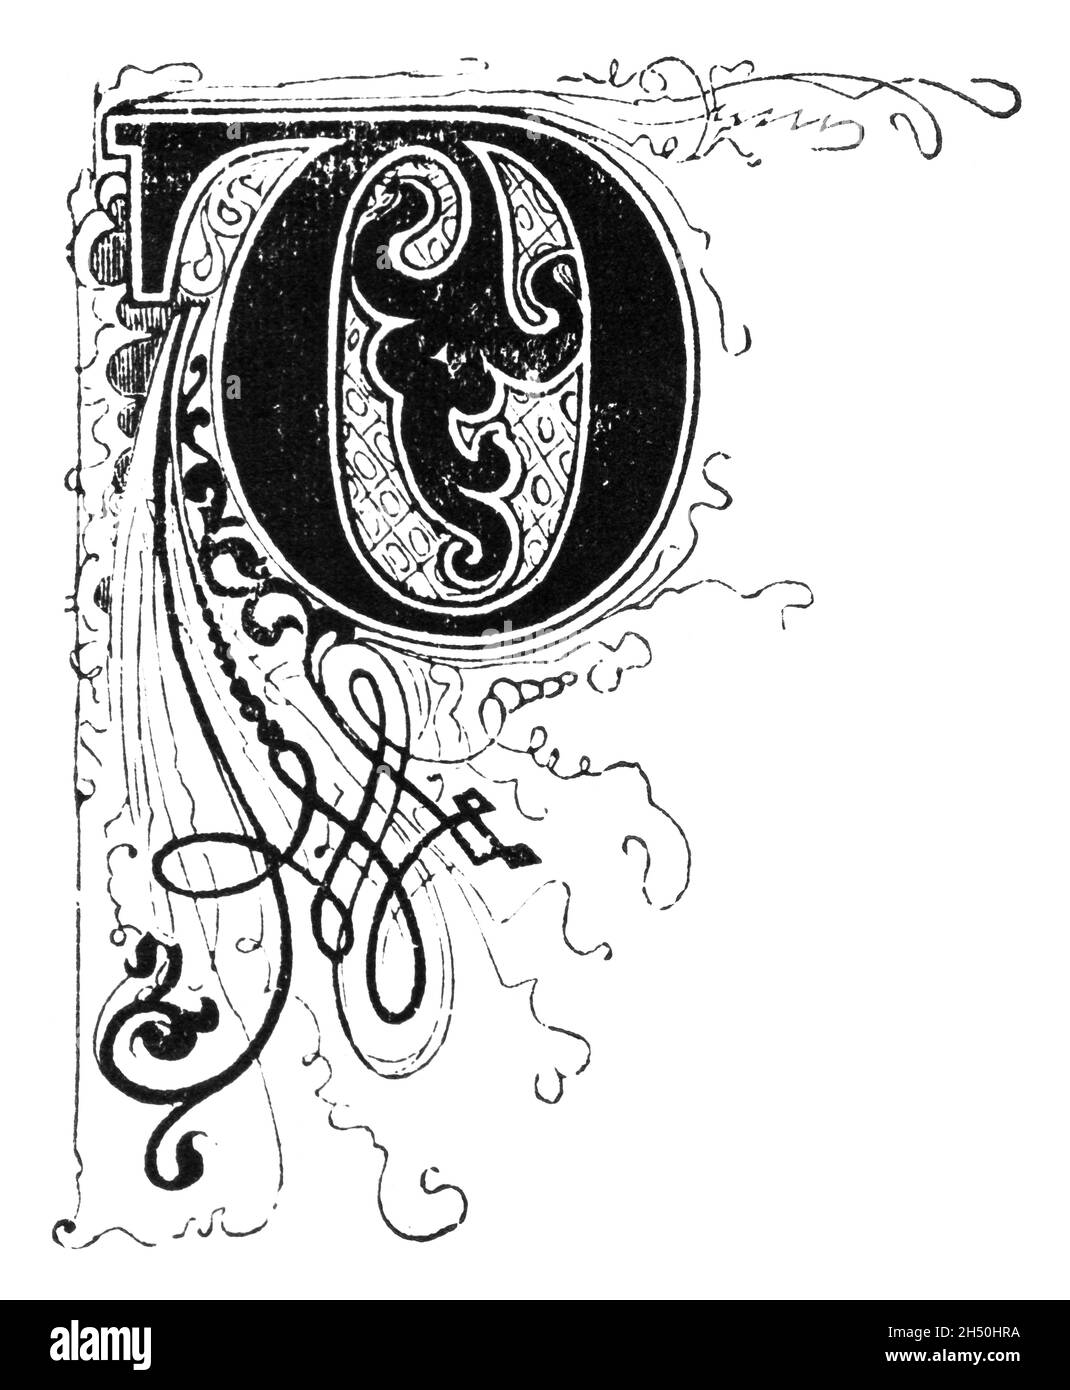 Lettre D ornée de décorations en forme de capitale, avec décoration ou ornement à motif floral.Ancien dessin antique Banque D'Images